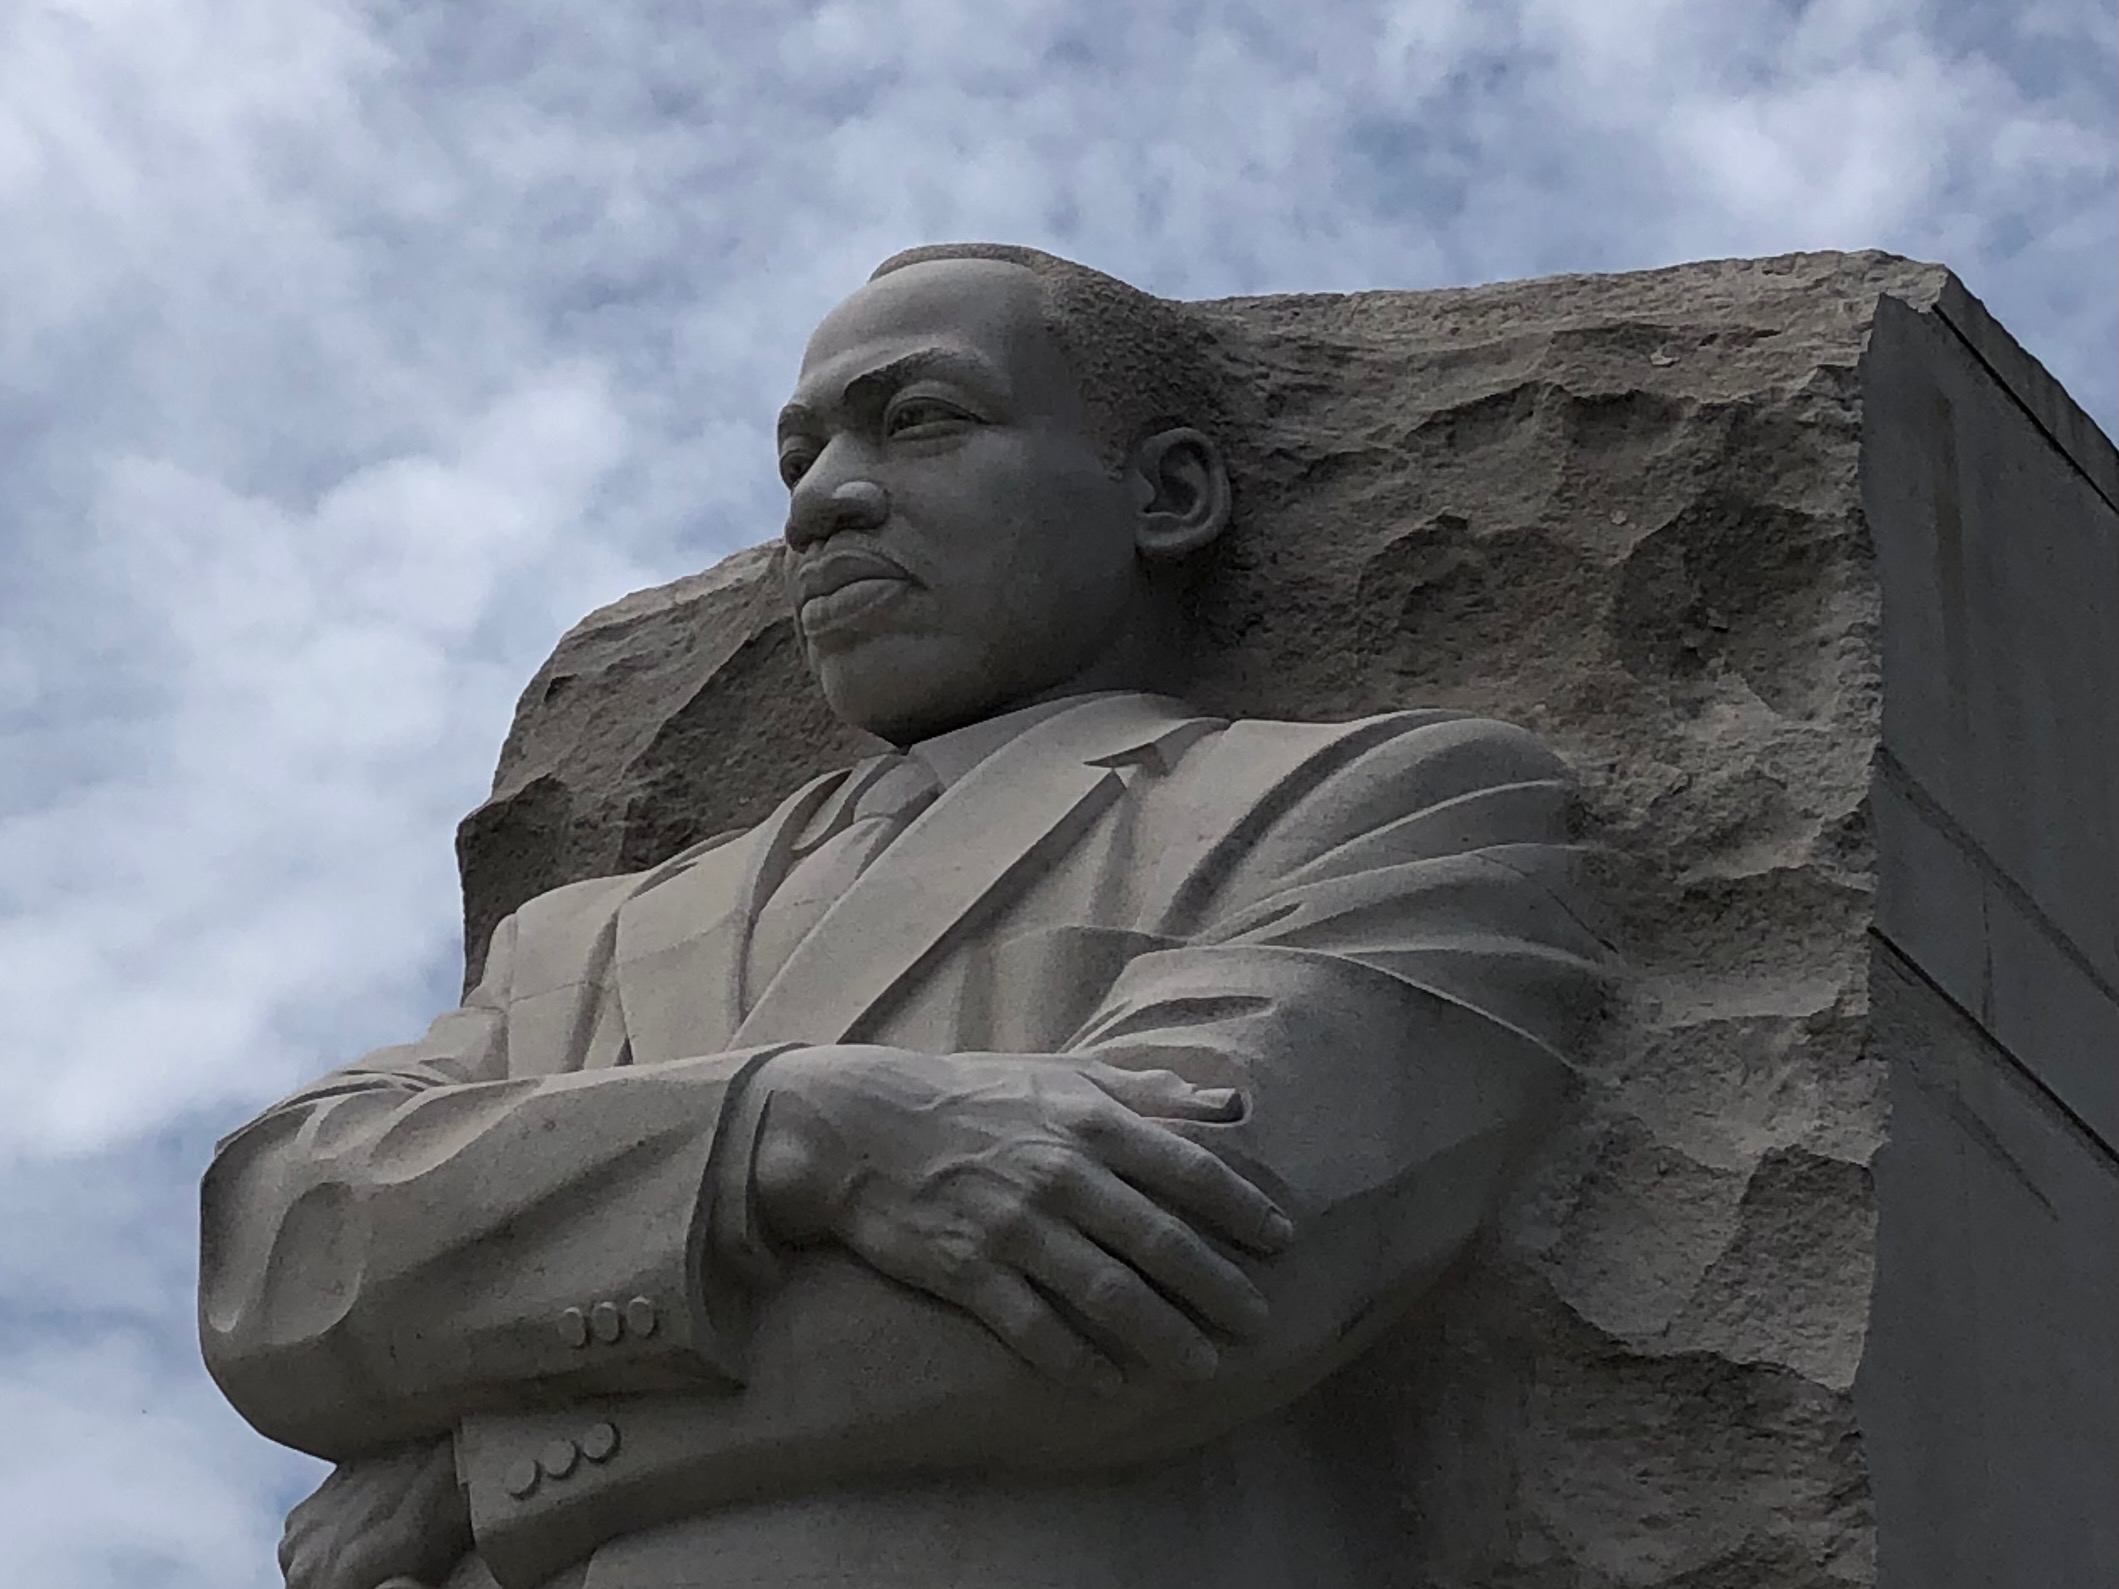 MLK Memorial in DC